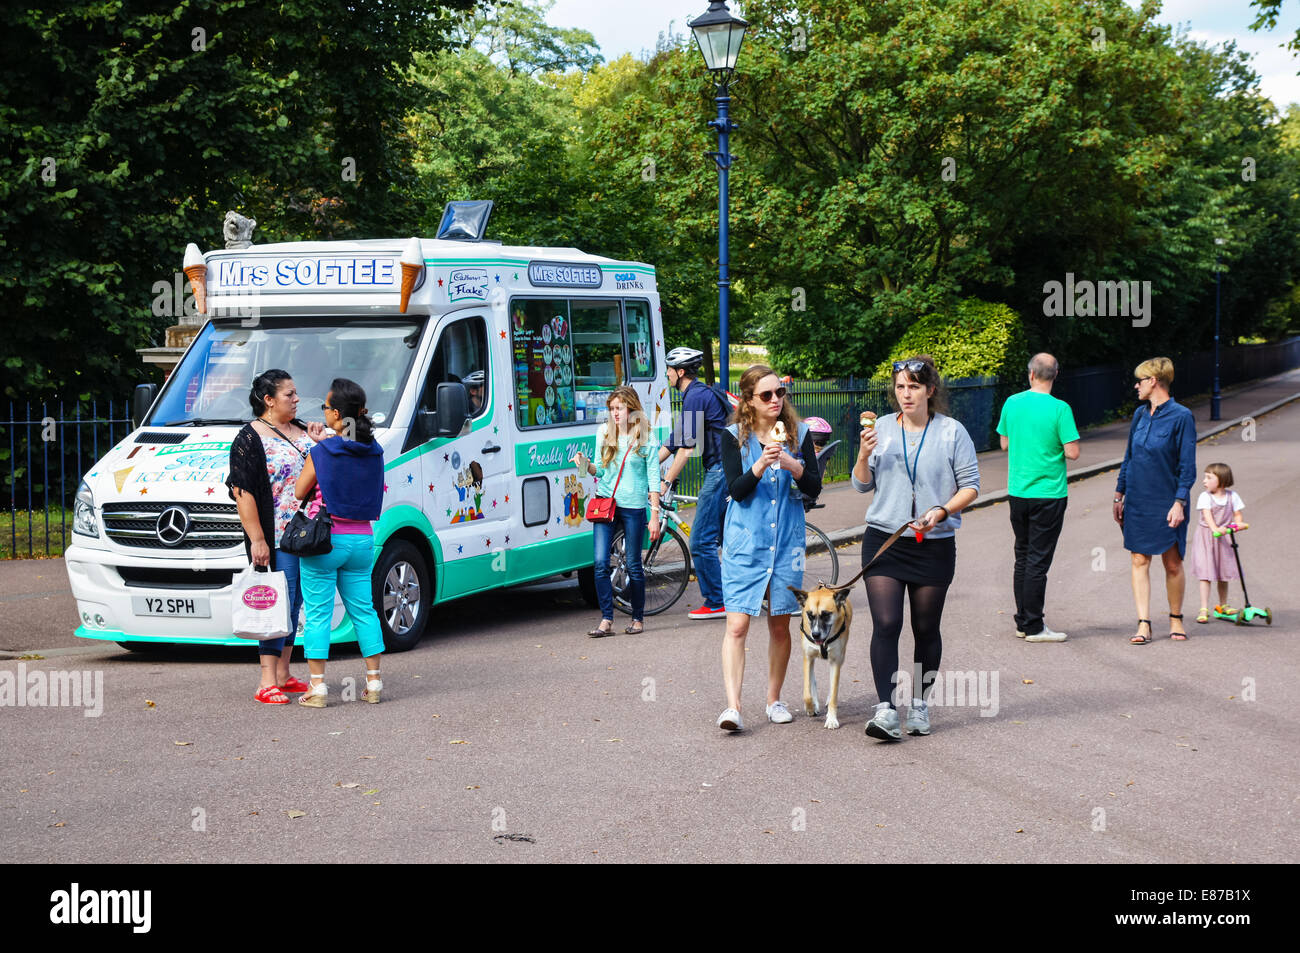 Ice cream van dans le parc Victoria, Londres Angleterre Royaume-Uni UK Banque D'Images